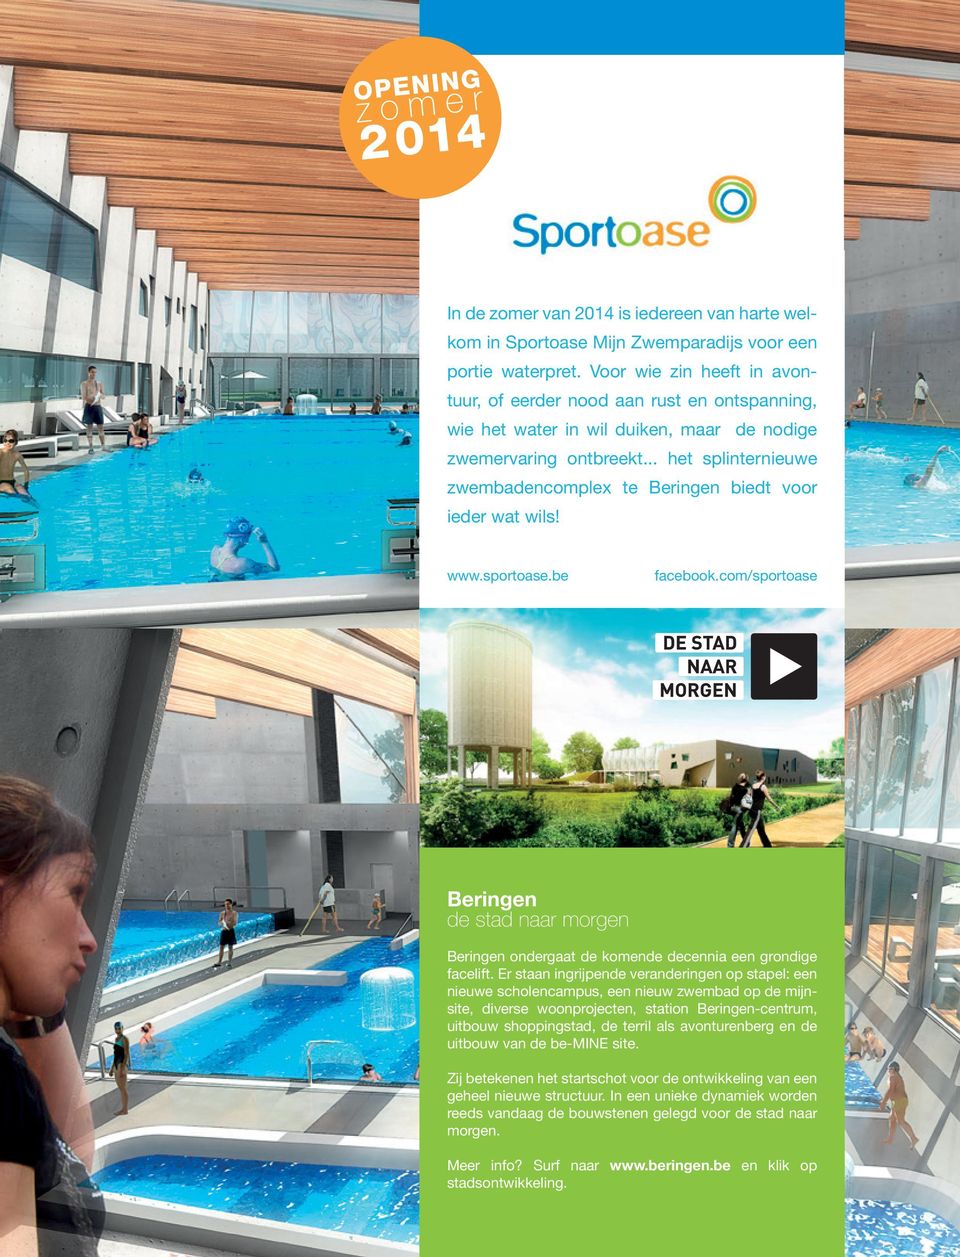 .. het splinternieuwe zwembadencomplex te Beringen biedt voor ieder wat wils! www.sportoase.be facebook.